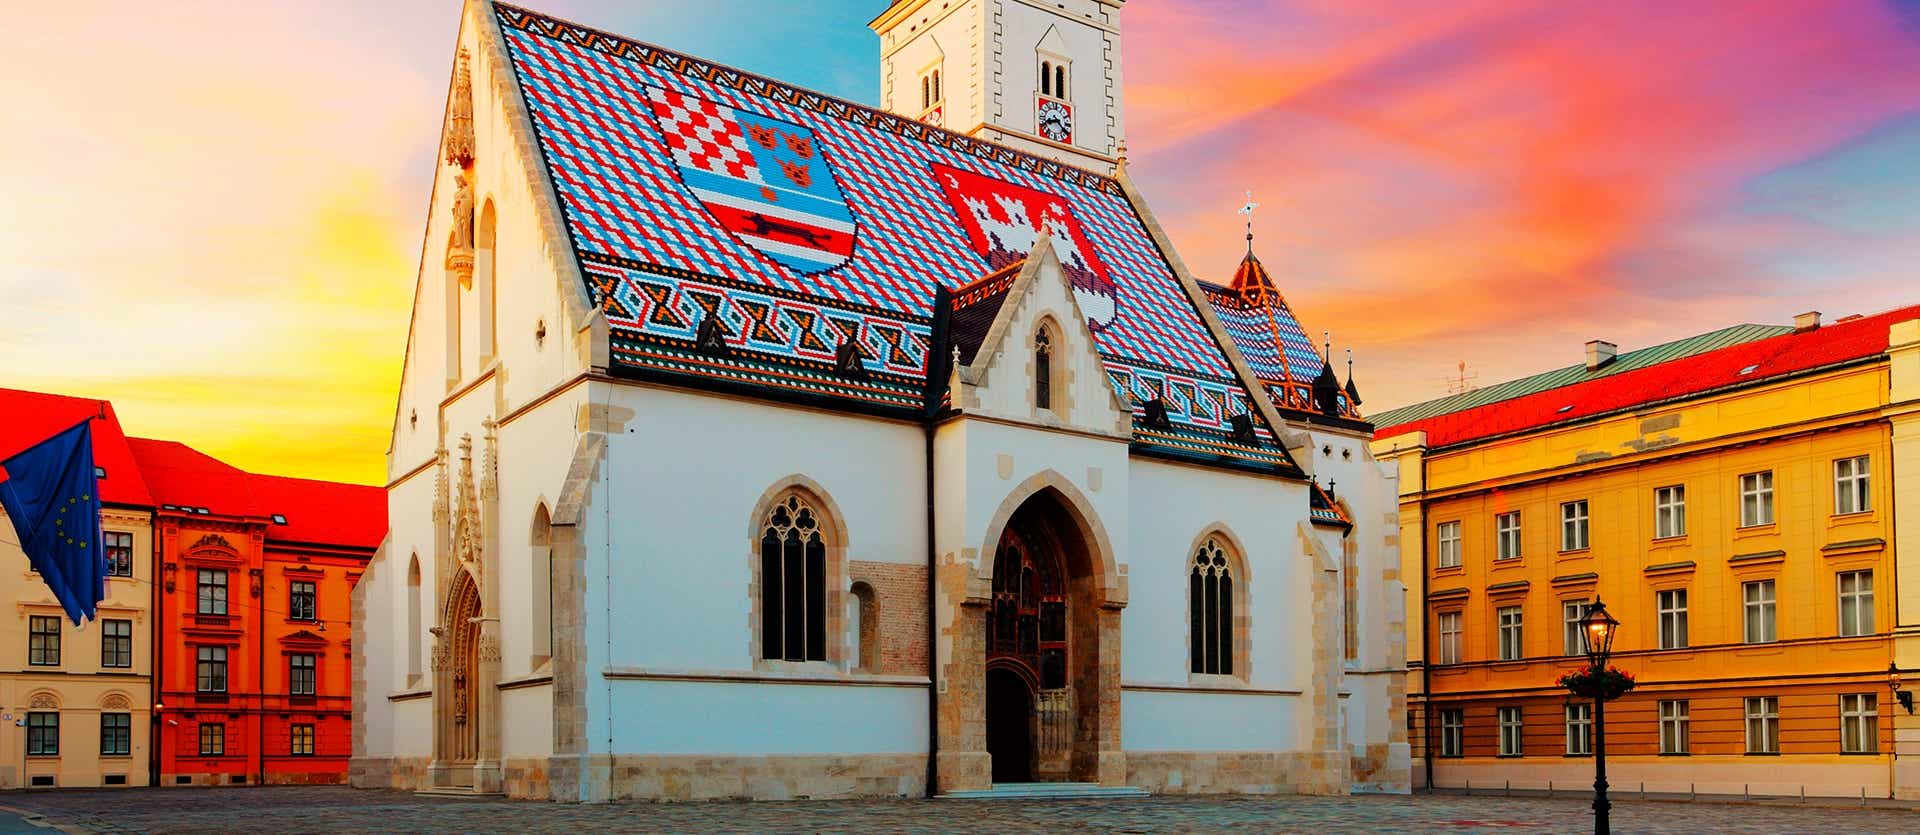 Saint Mark Church <span class="iconos separador"></span> Zagreb
